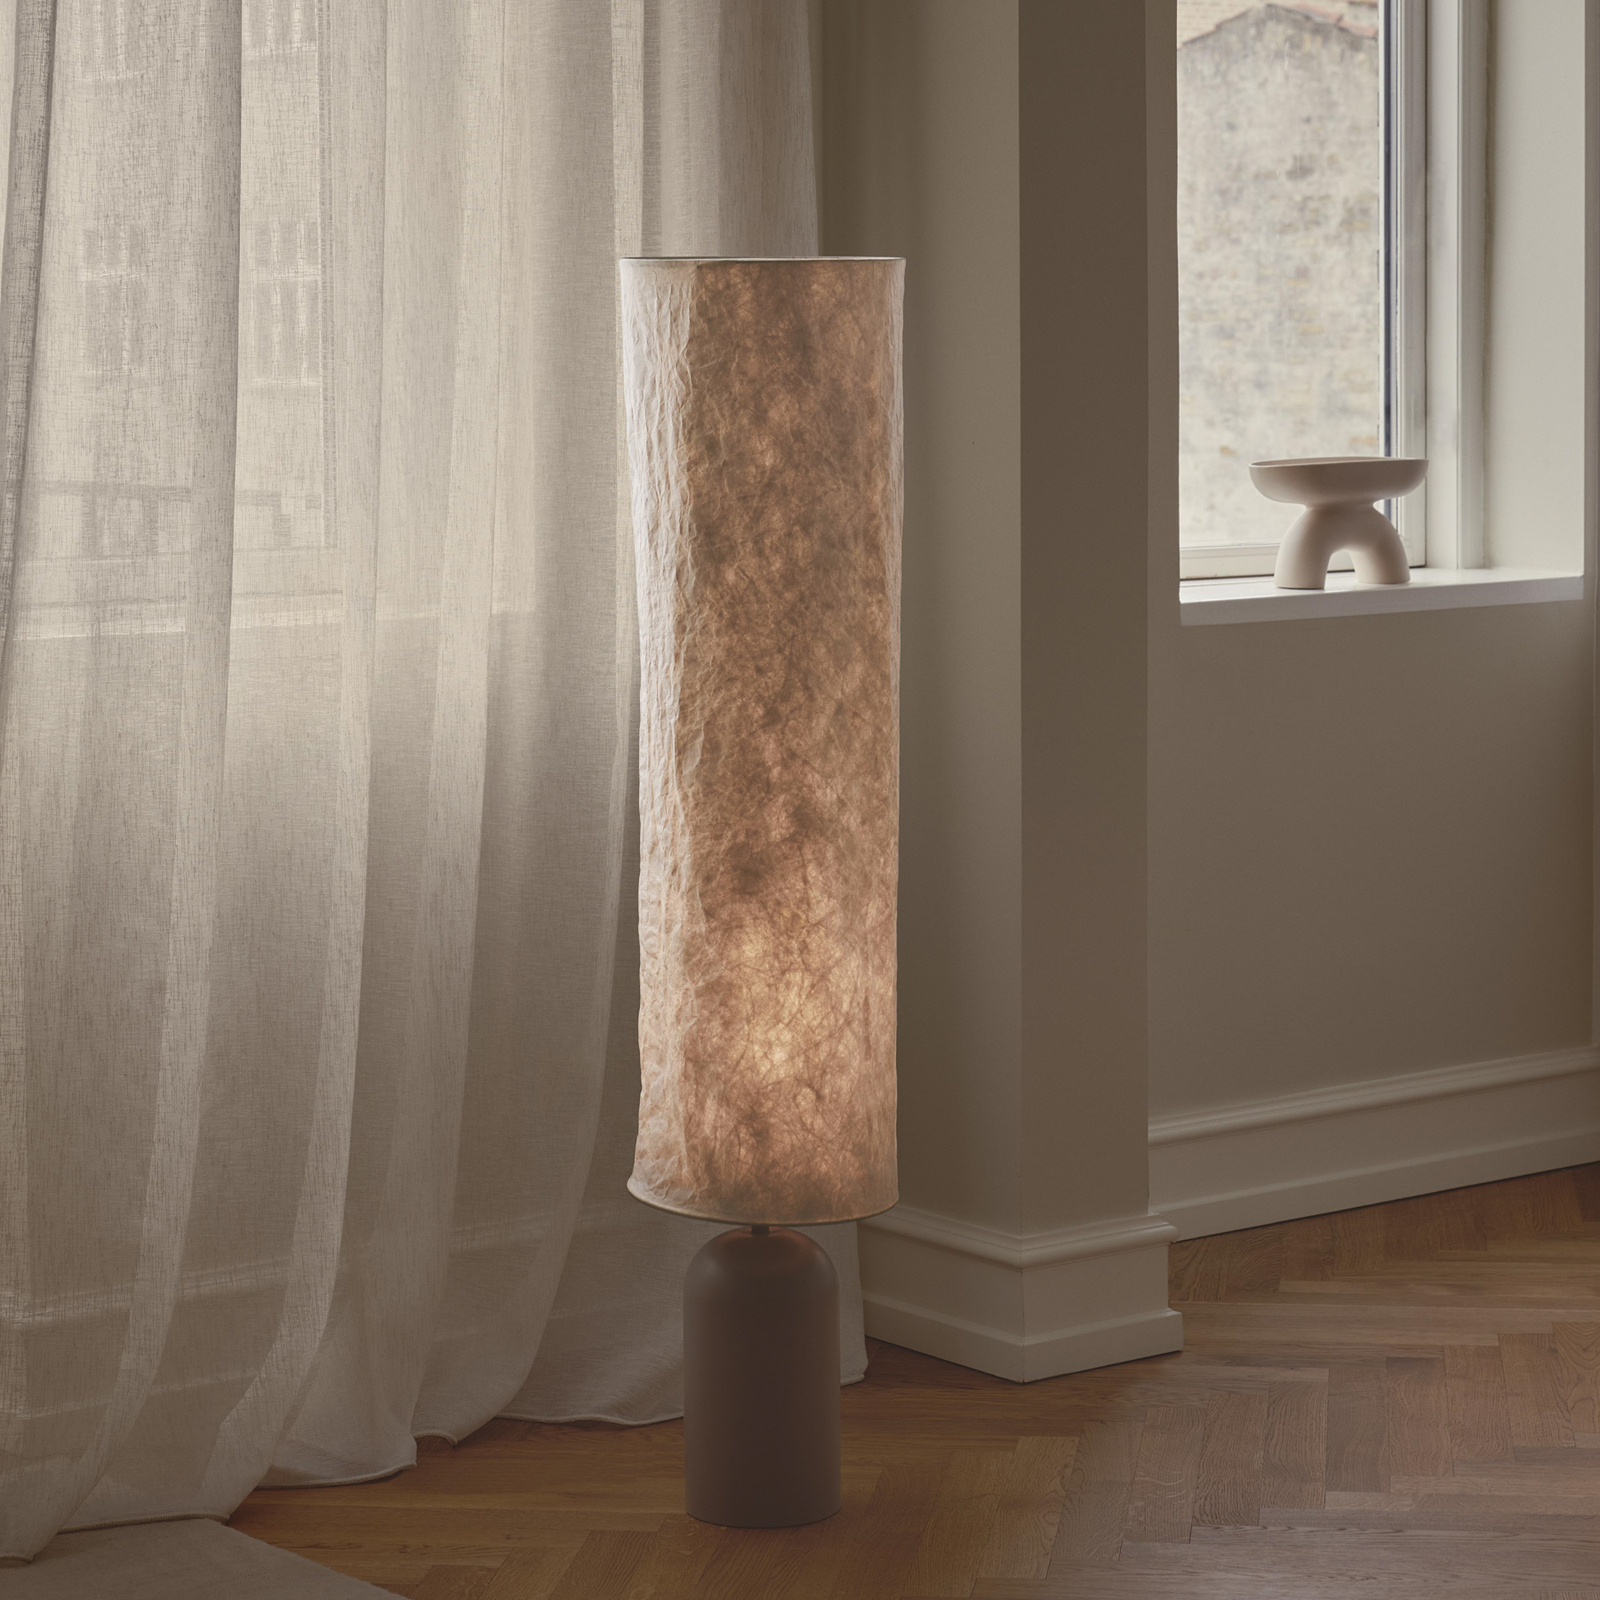 Talli vloerlamp, bruin, Tyvek/metaal, hoogte 113 cm